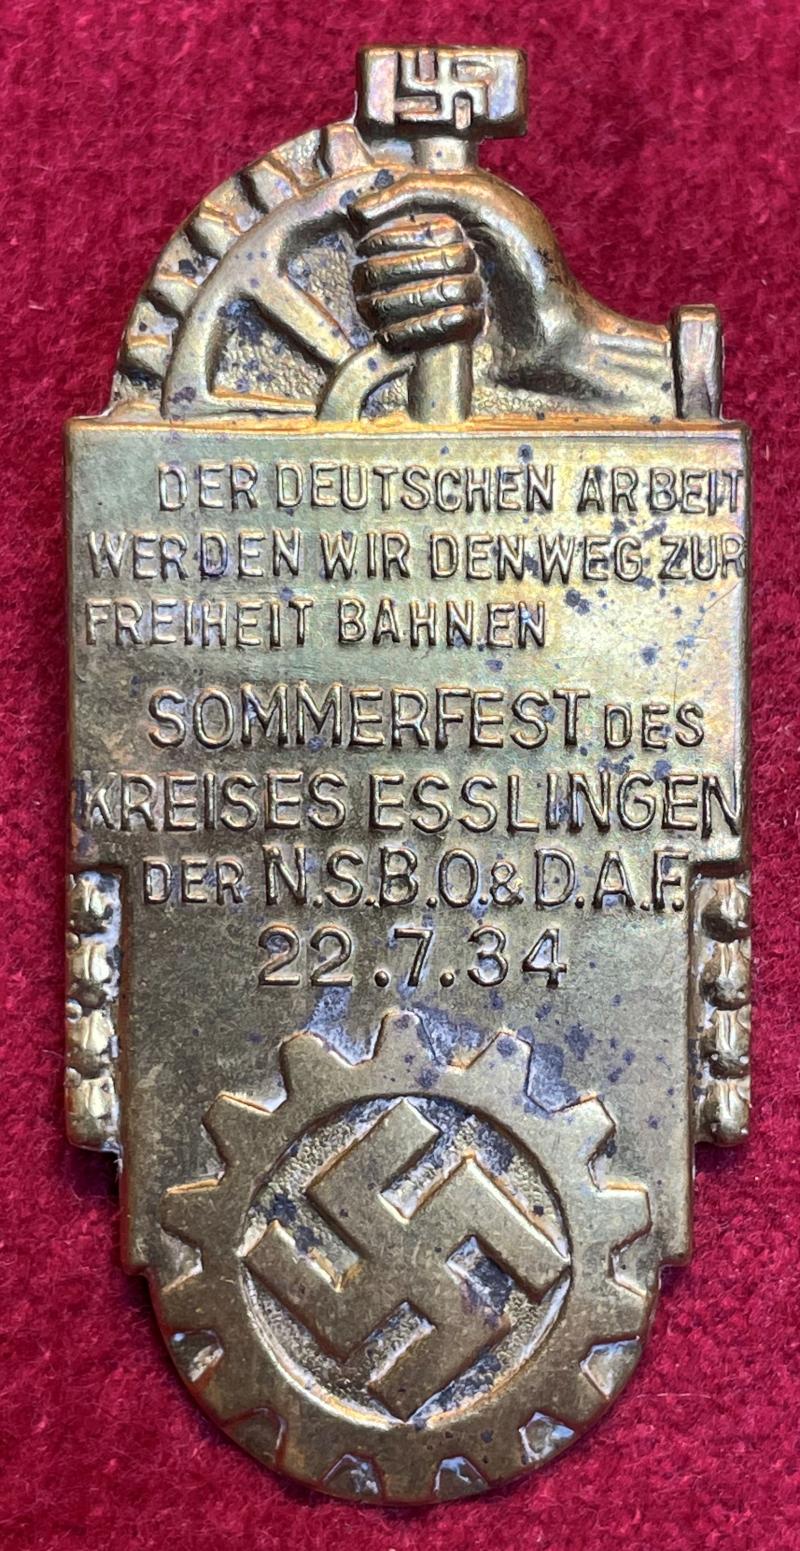 3rd Reich NSBO & DAF Sommerfest Kreis Esslingen